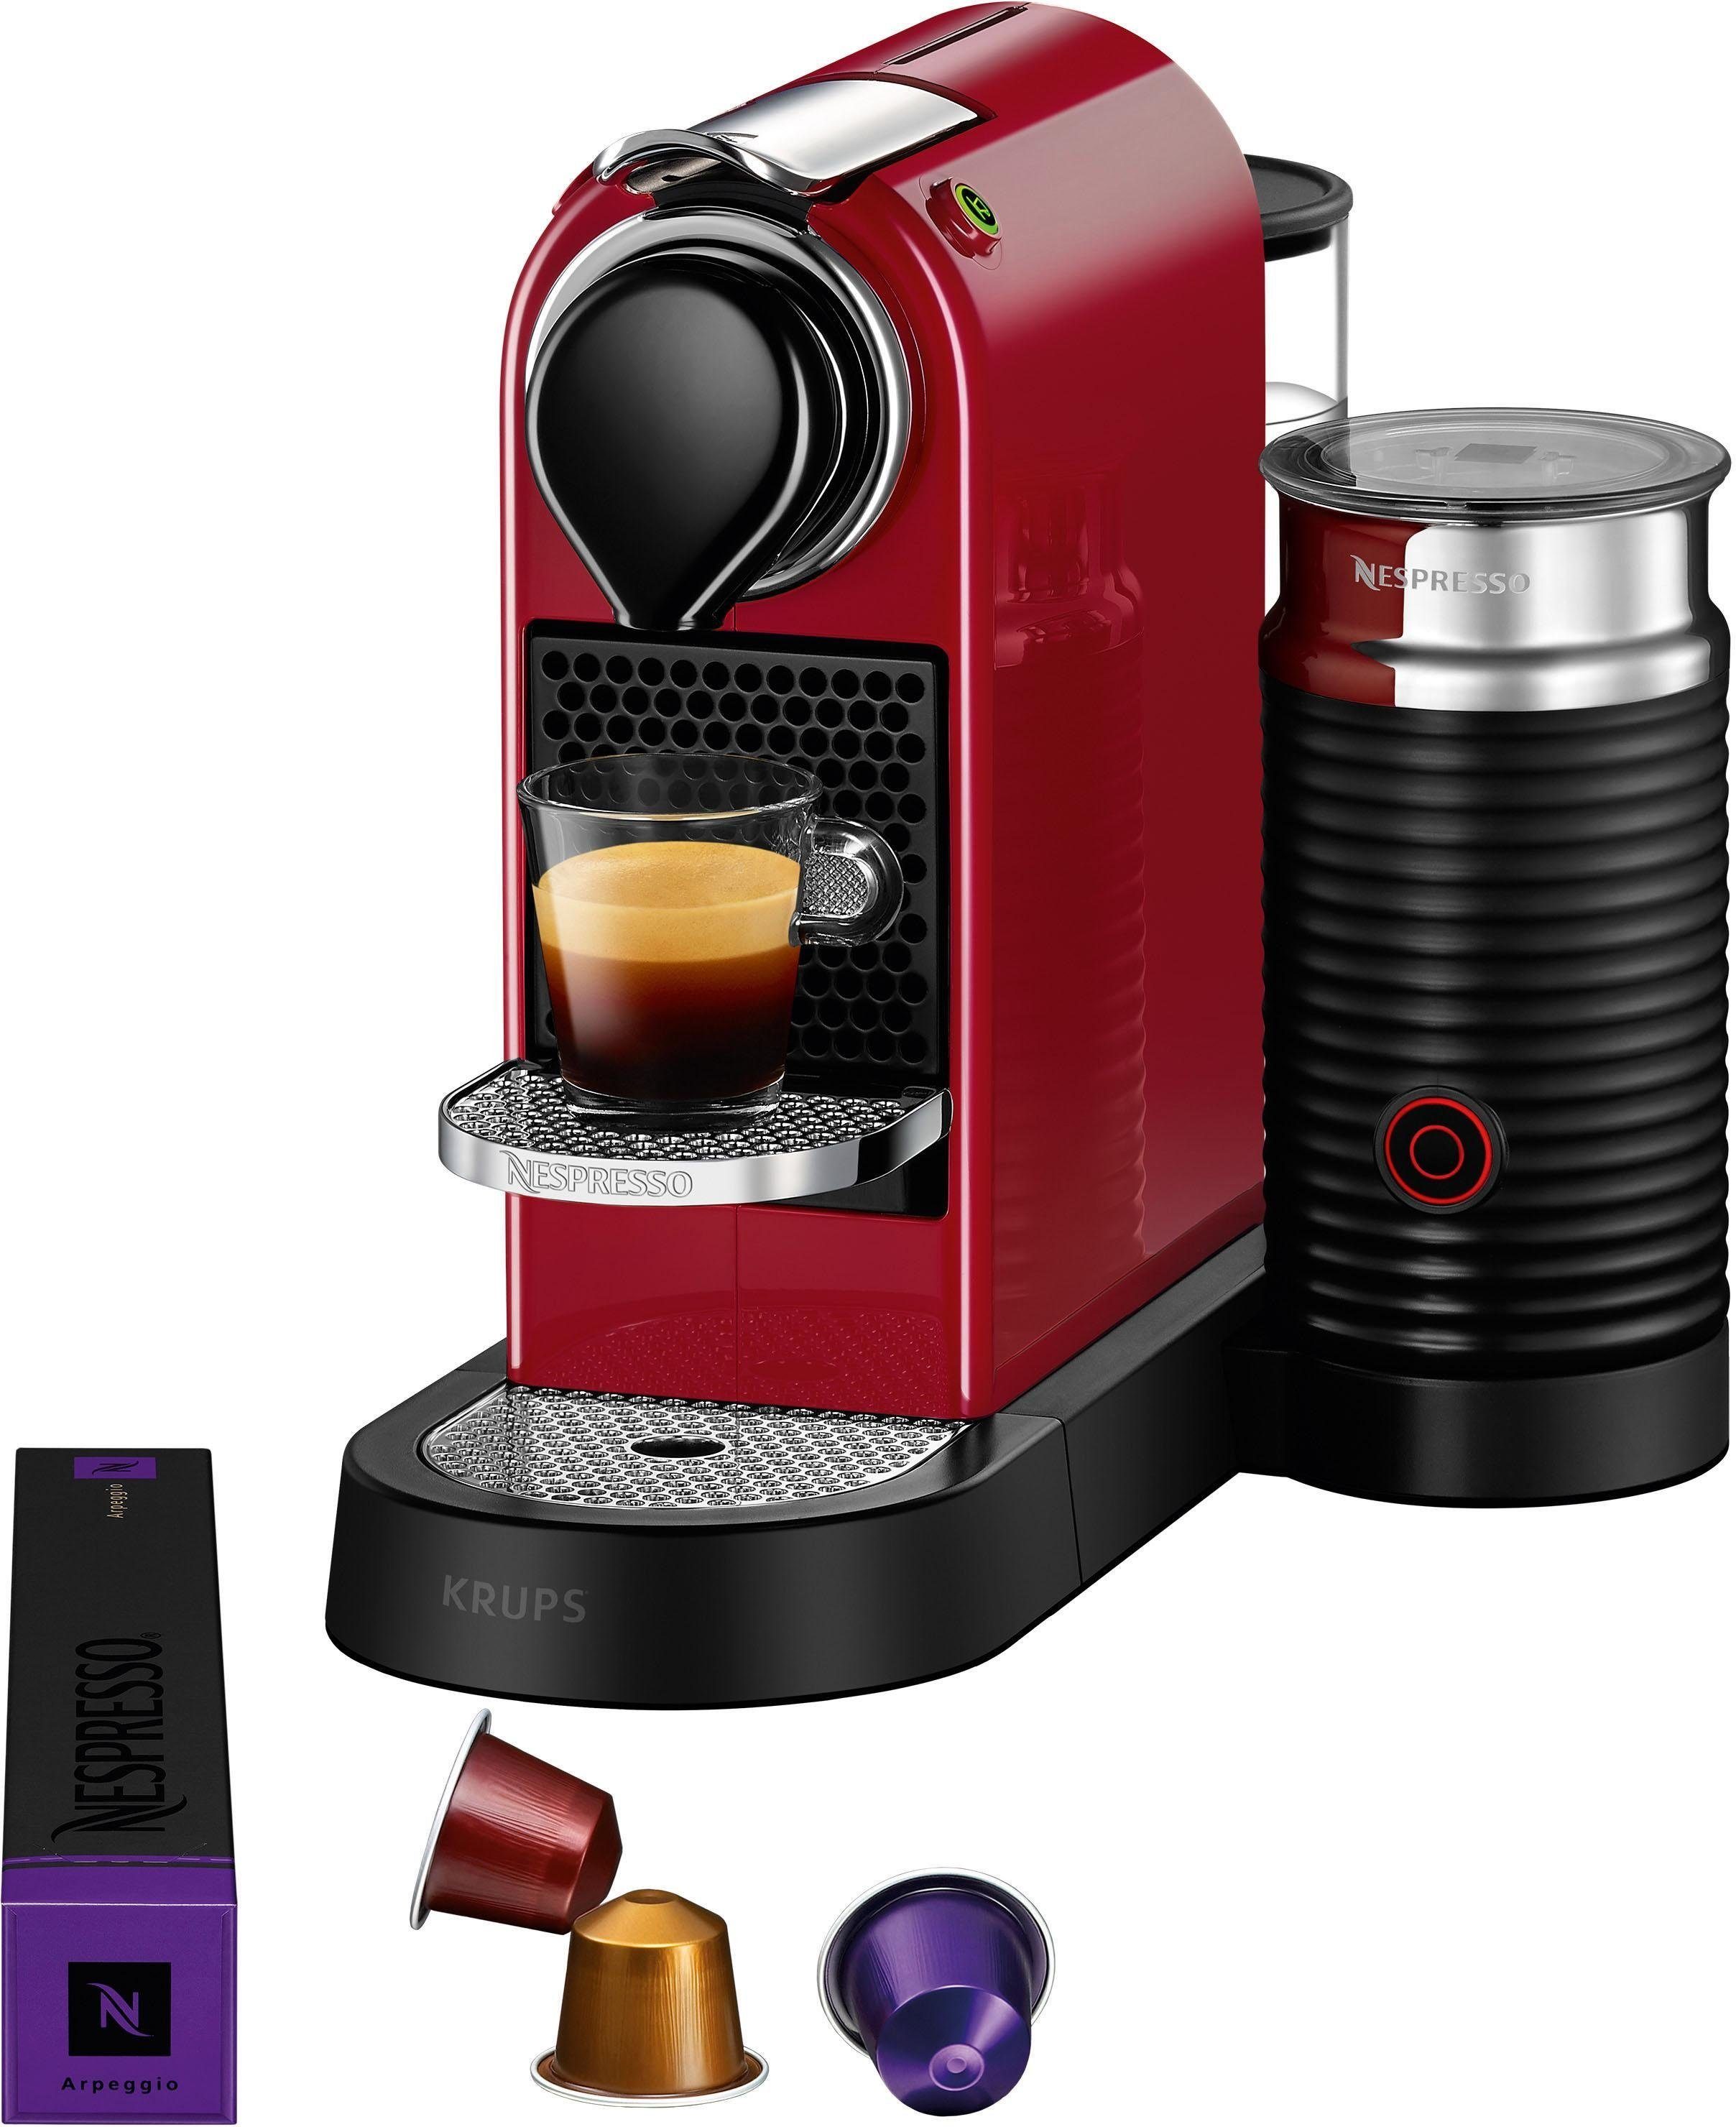 Nespresso Kapselmaschine XN7615 7 von inkl. Kapseln Krups, Willkommenspaket CitiZ Milchaufschäumer, Aeroccino mit Milk 